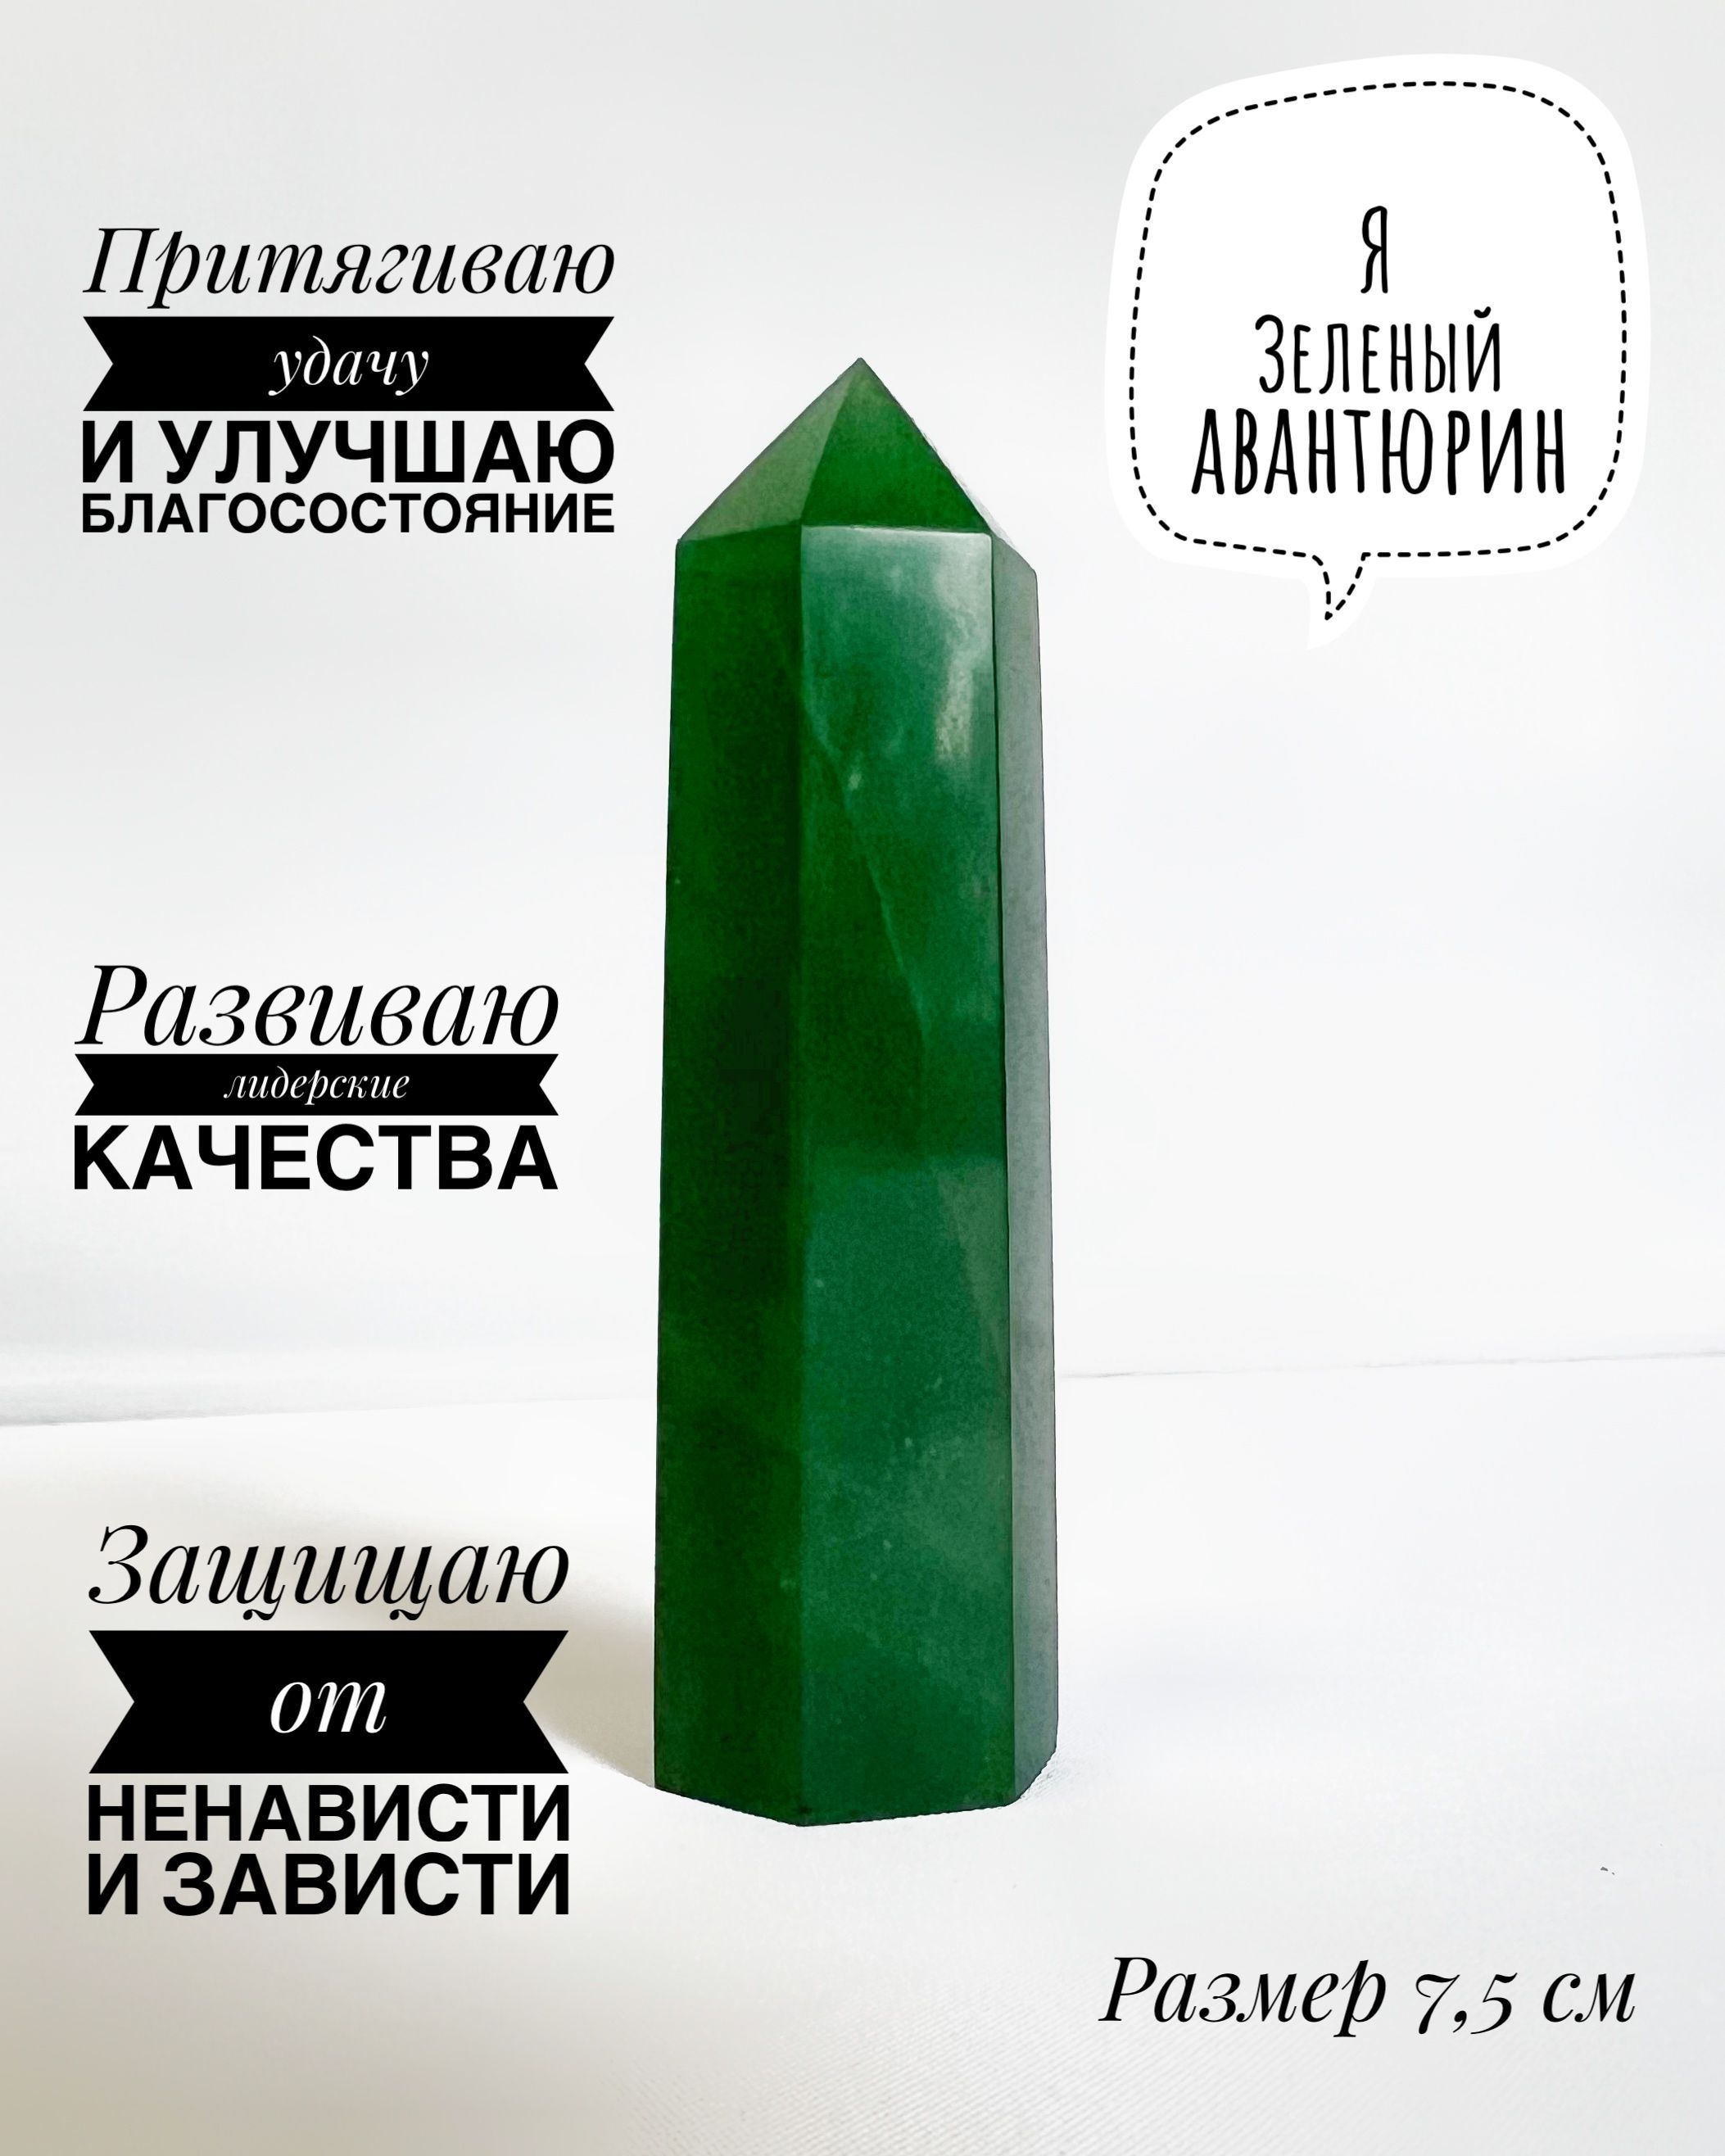 Авантюрин зеленый, натуральный камень (минерал), кристалл - купить сдоставкой по выгодным ценам в интернет-магазине OZON (1014210036)